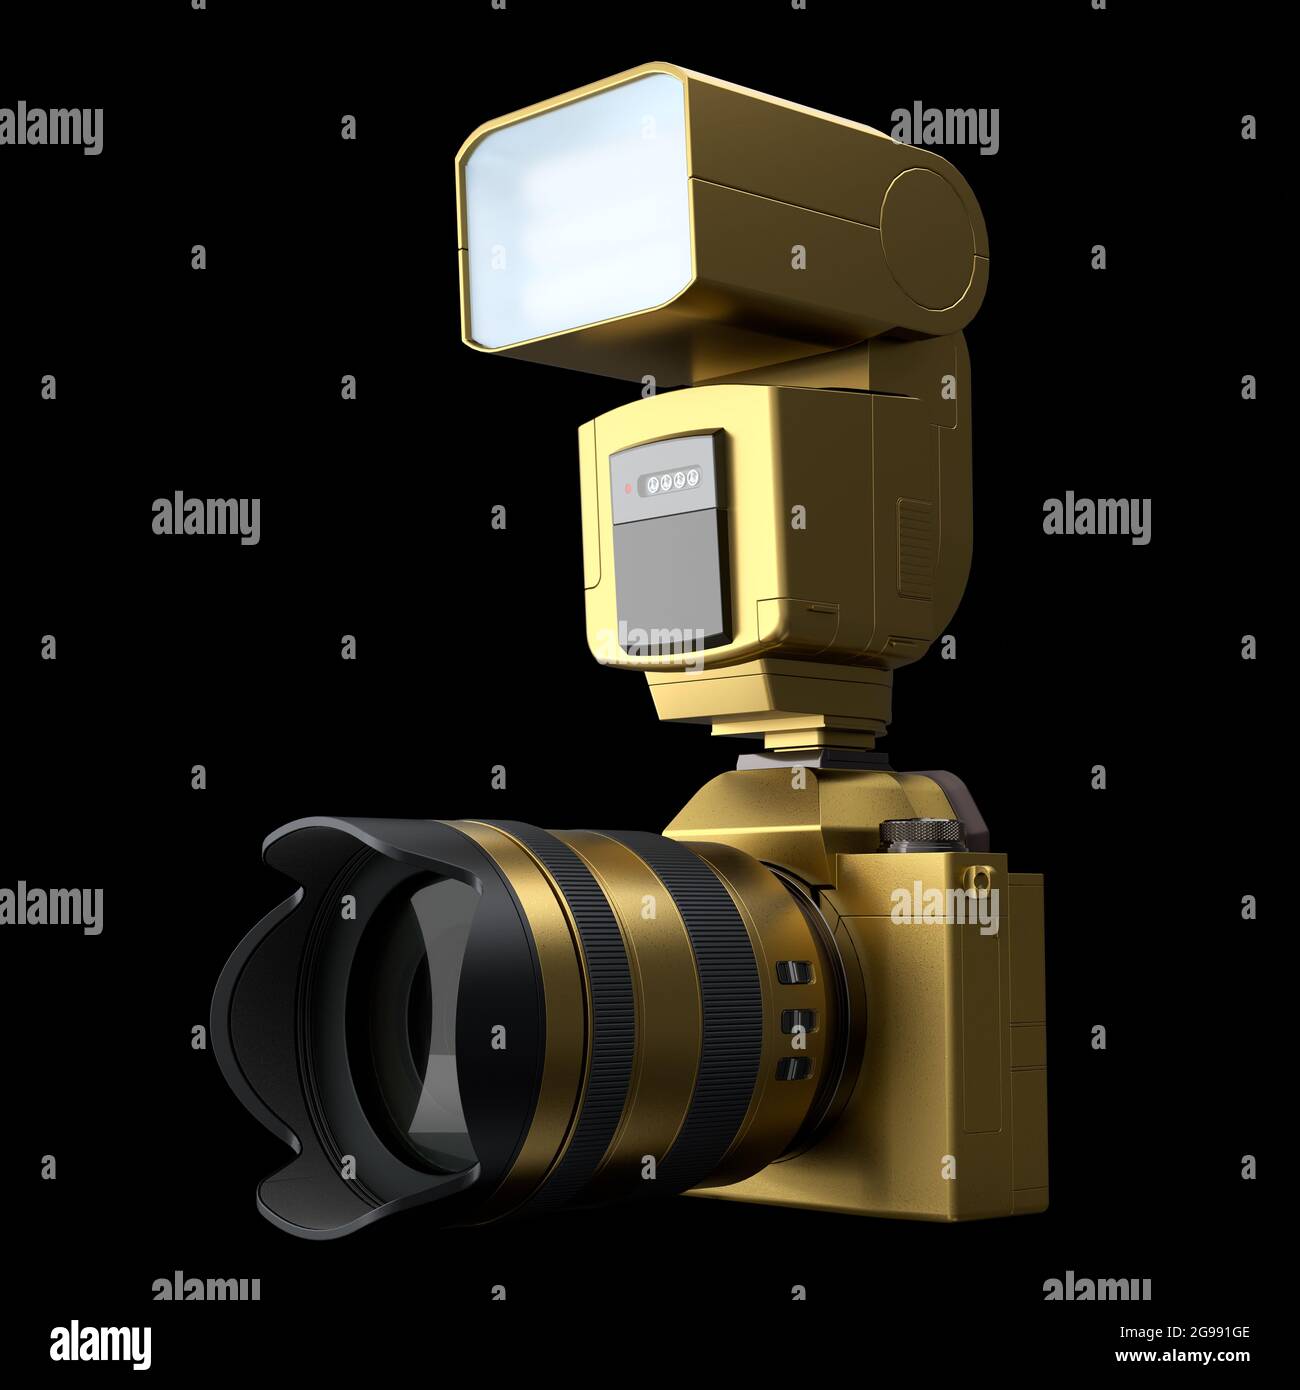 Concetto di oro inesistente DSLR fotocamera con obiettivo e flash esterno speedlight isolato su sfondo nero. Rendering 3D di fotografia professionale Foto Stock